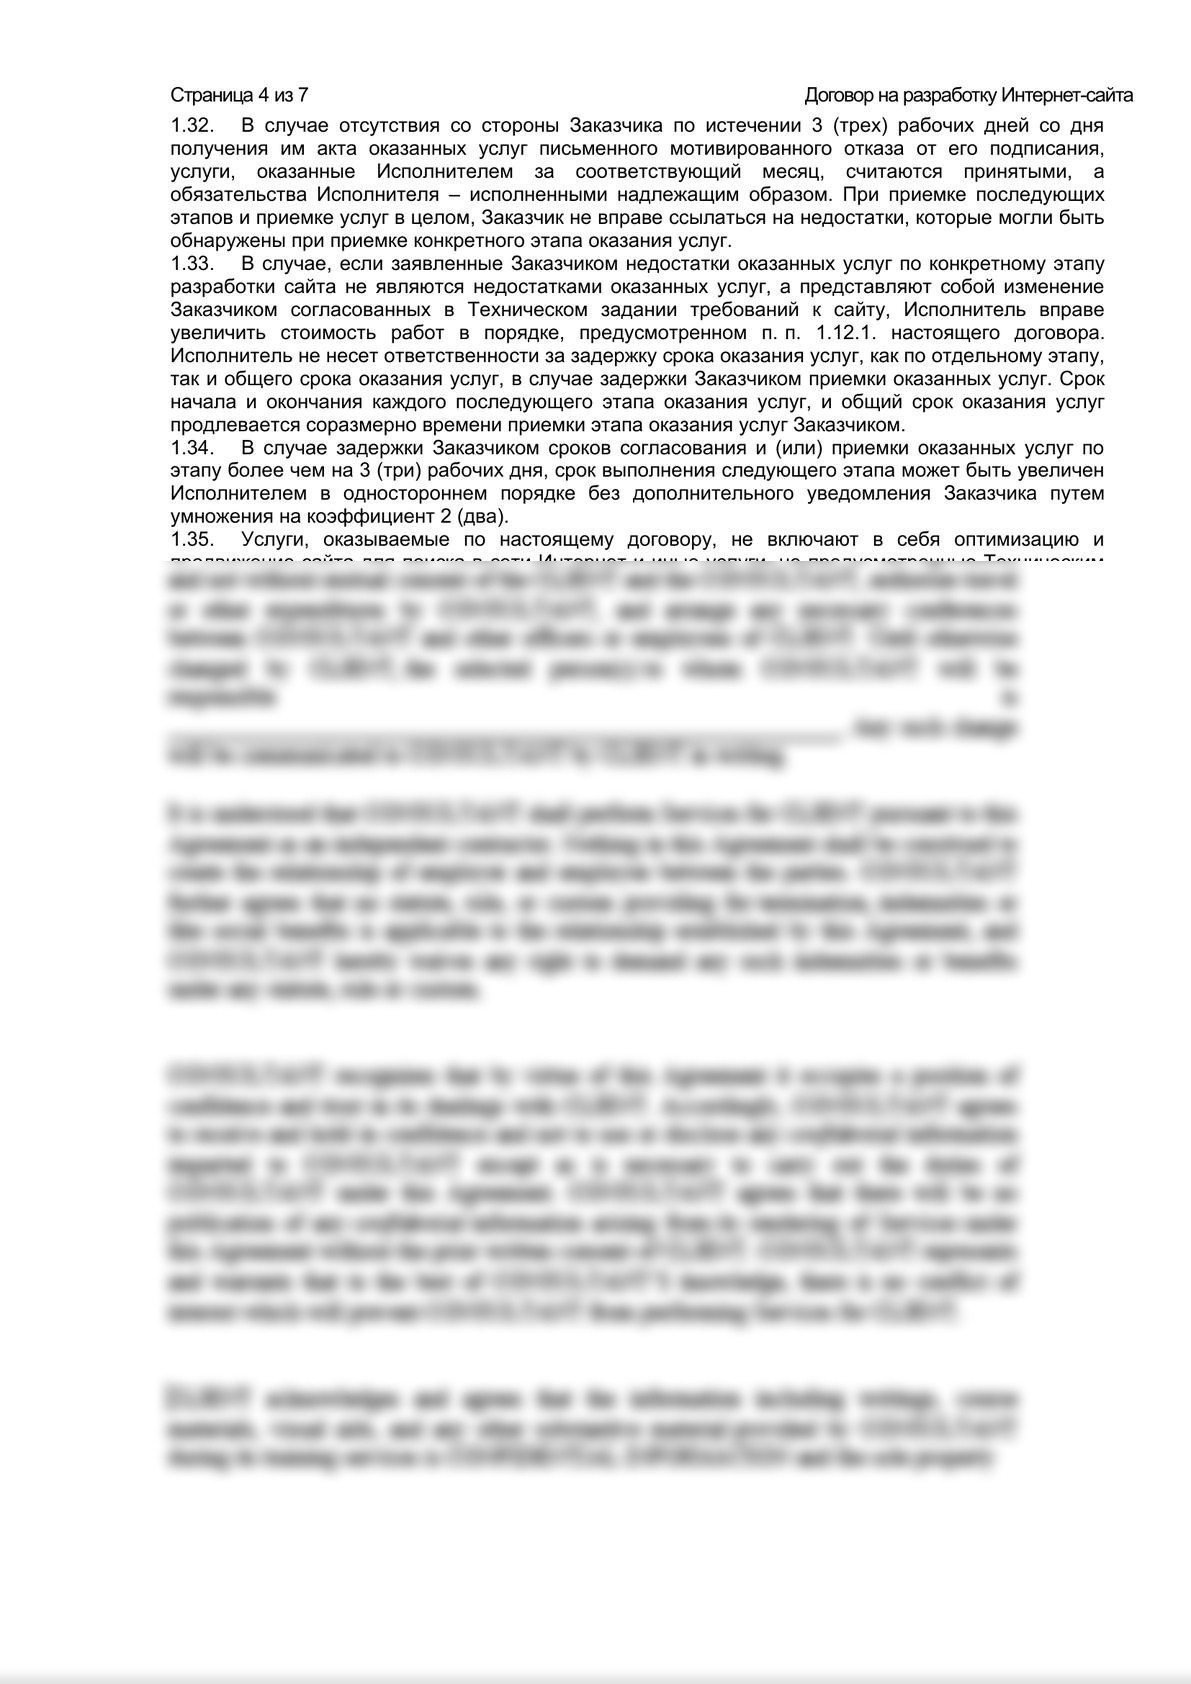 Шаблон договора на разработку Интернет-сайта-3